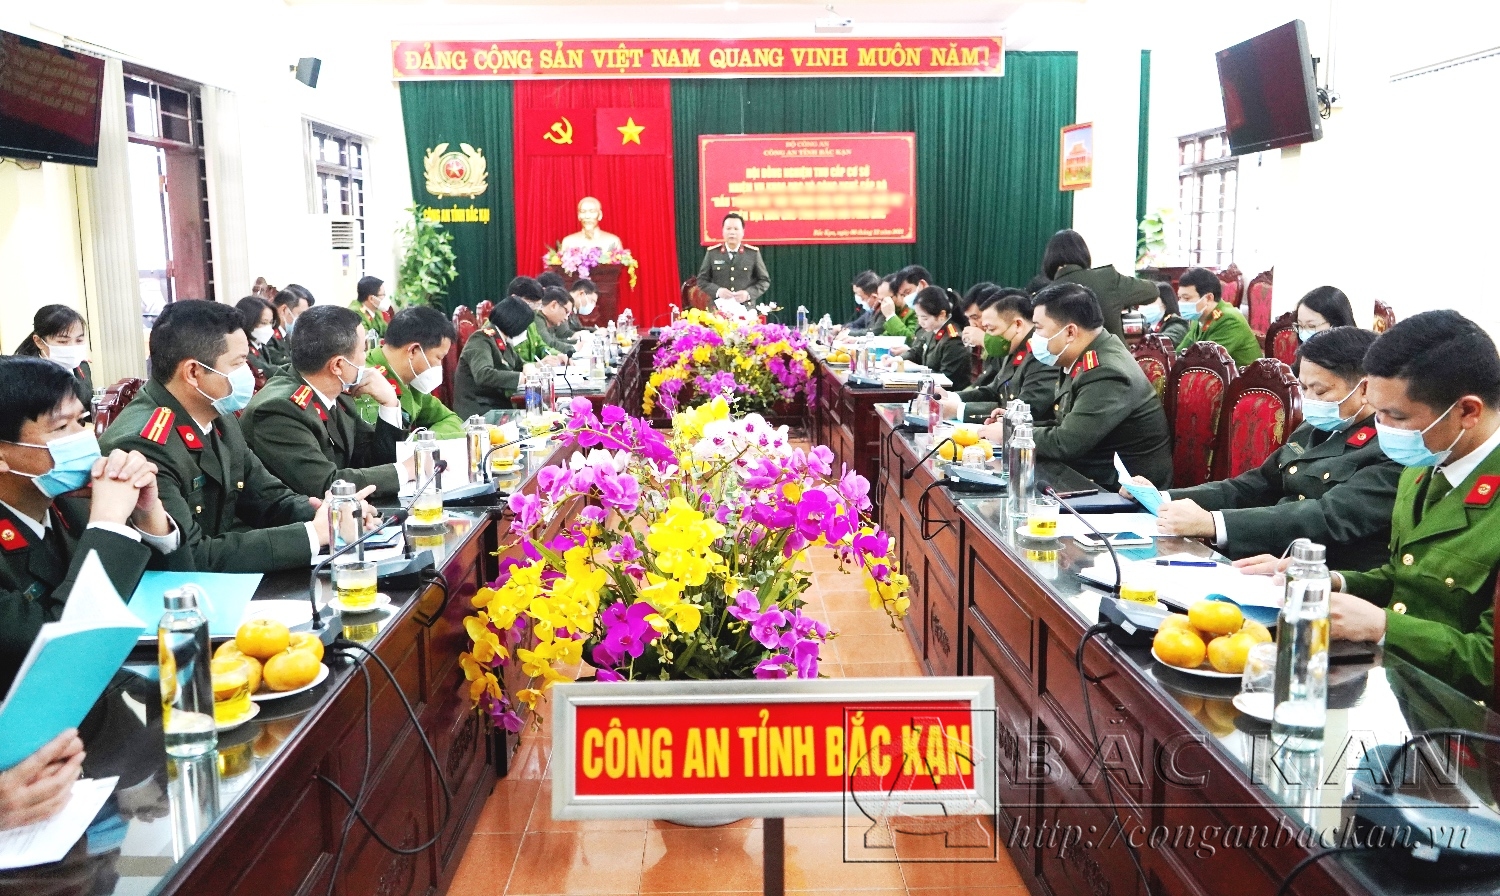  Hội đồng khoa học và công nghệ Công an tỉnh nghiệm thu cấp cơ sở đề tài khoa học cấp Bộ do Đại tá Nguyễn Thanh Tuân chủ nhiệm